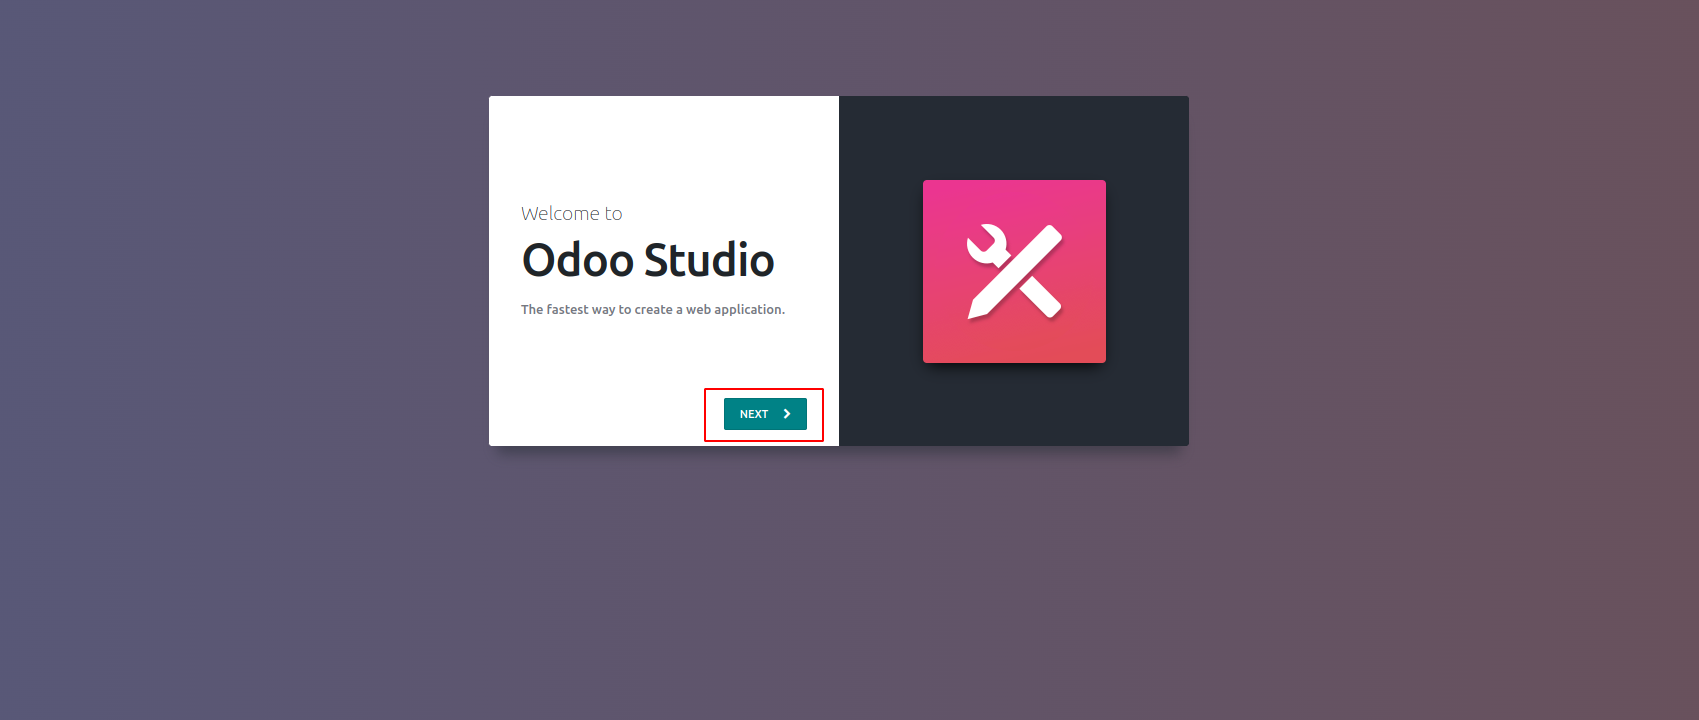 odoo-studio